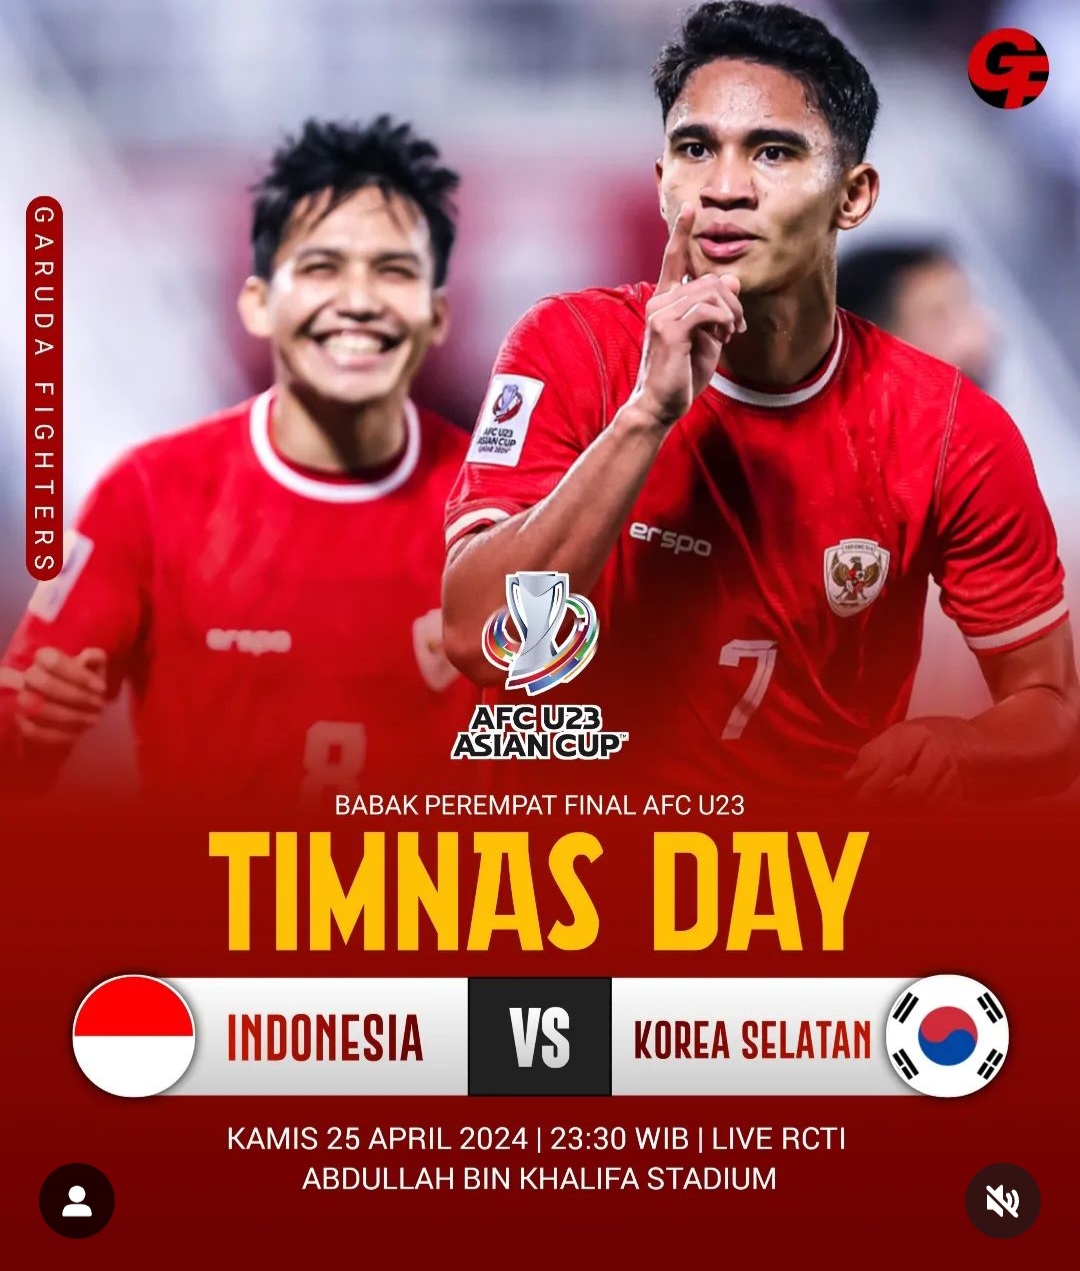 Prediksi Timnas Indonesia Vs Korea Selatan dalam Piala Asia U-23